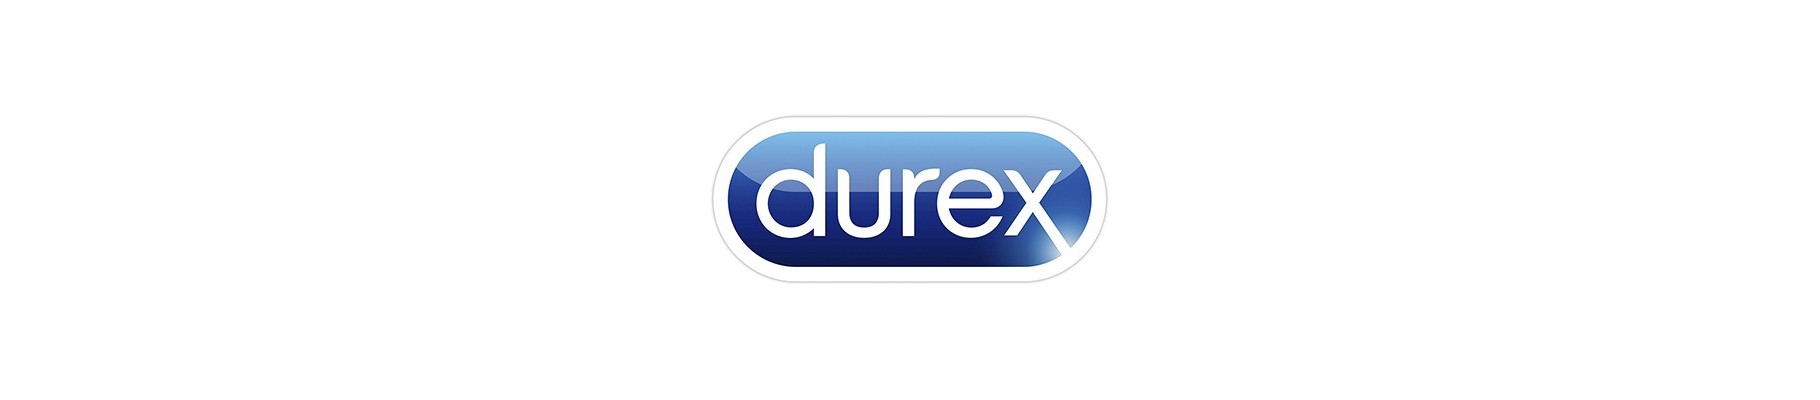 Презервативы Durex